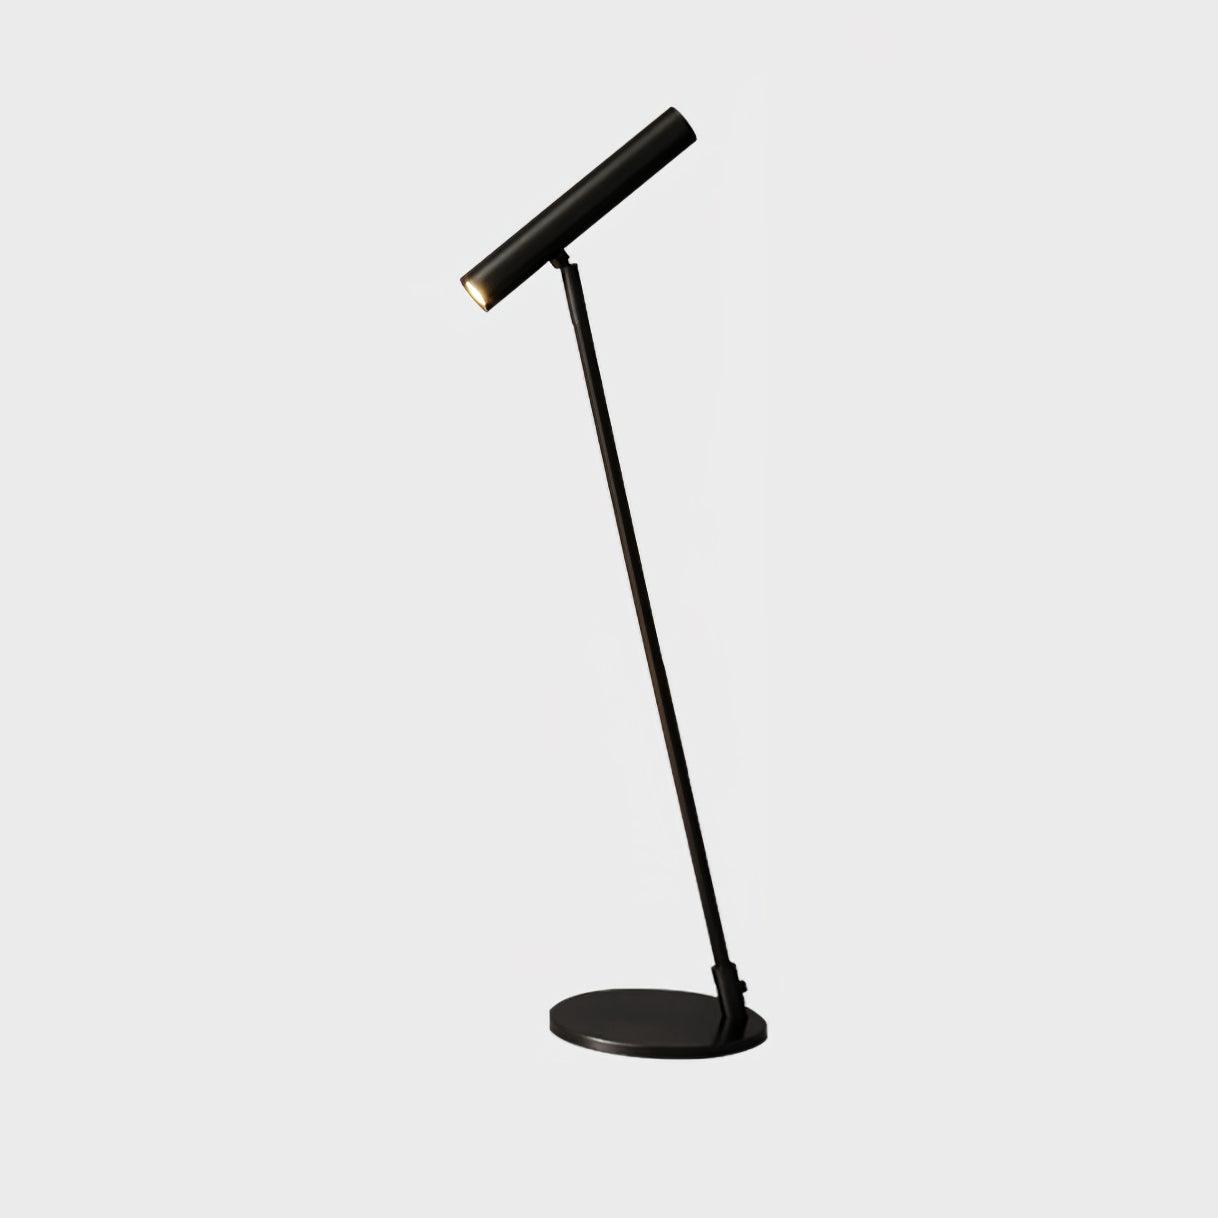 Toeval spreiding materiaal Tom LED Table Lamp – Vakkerlight